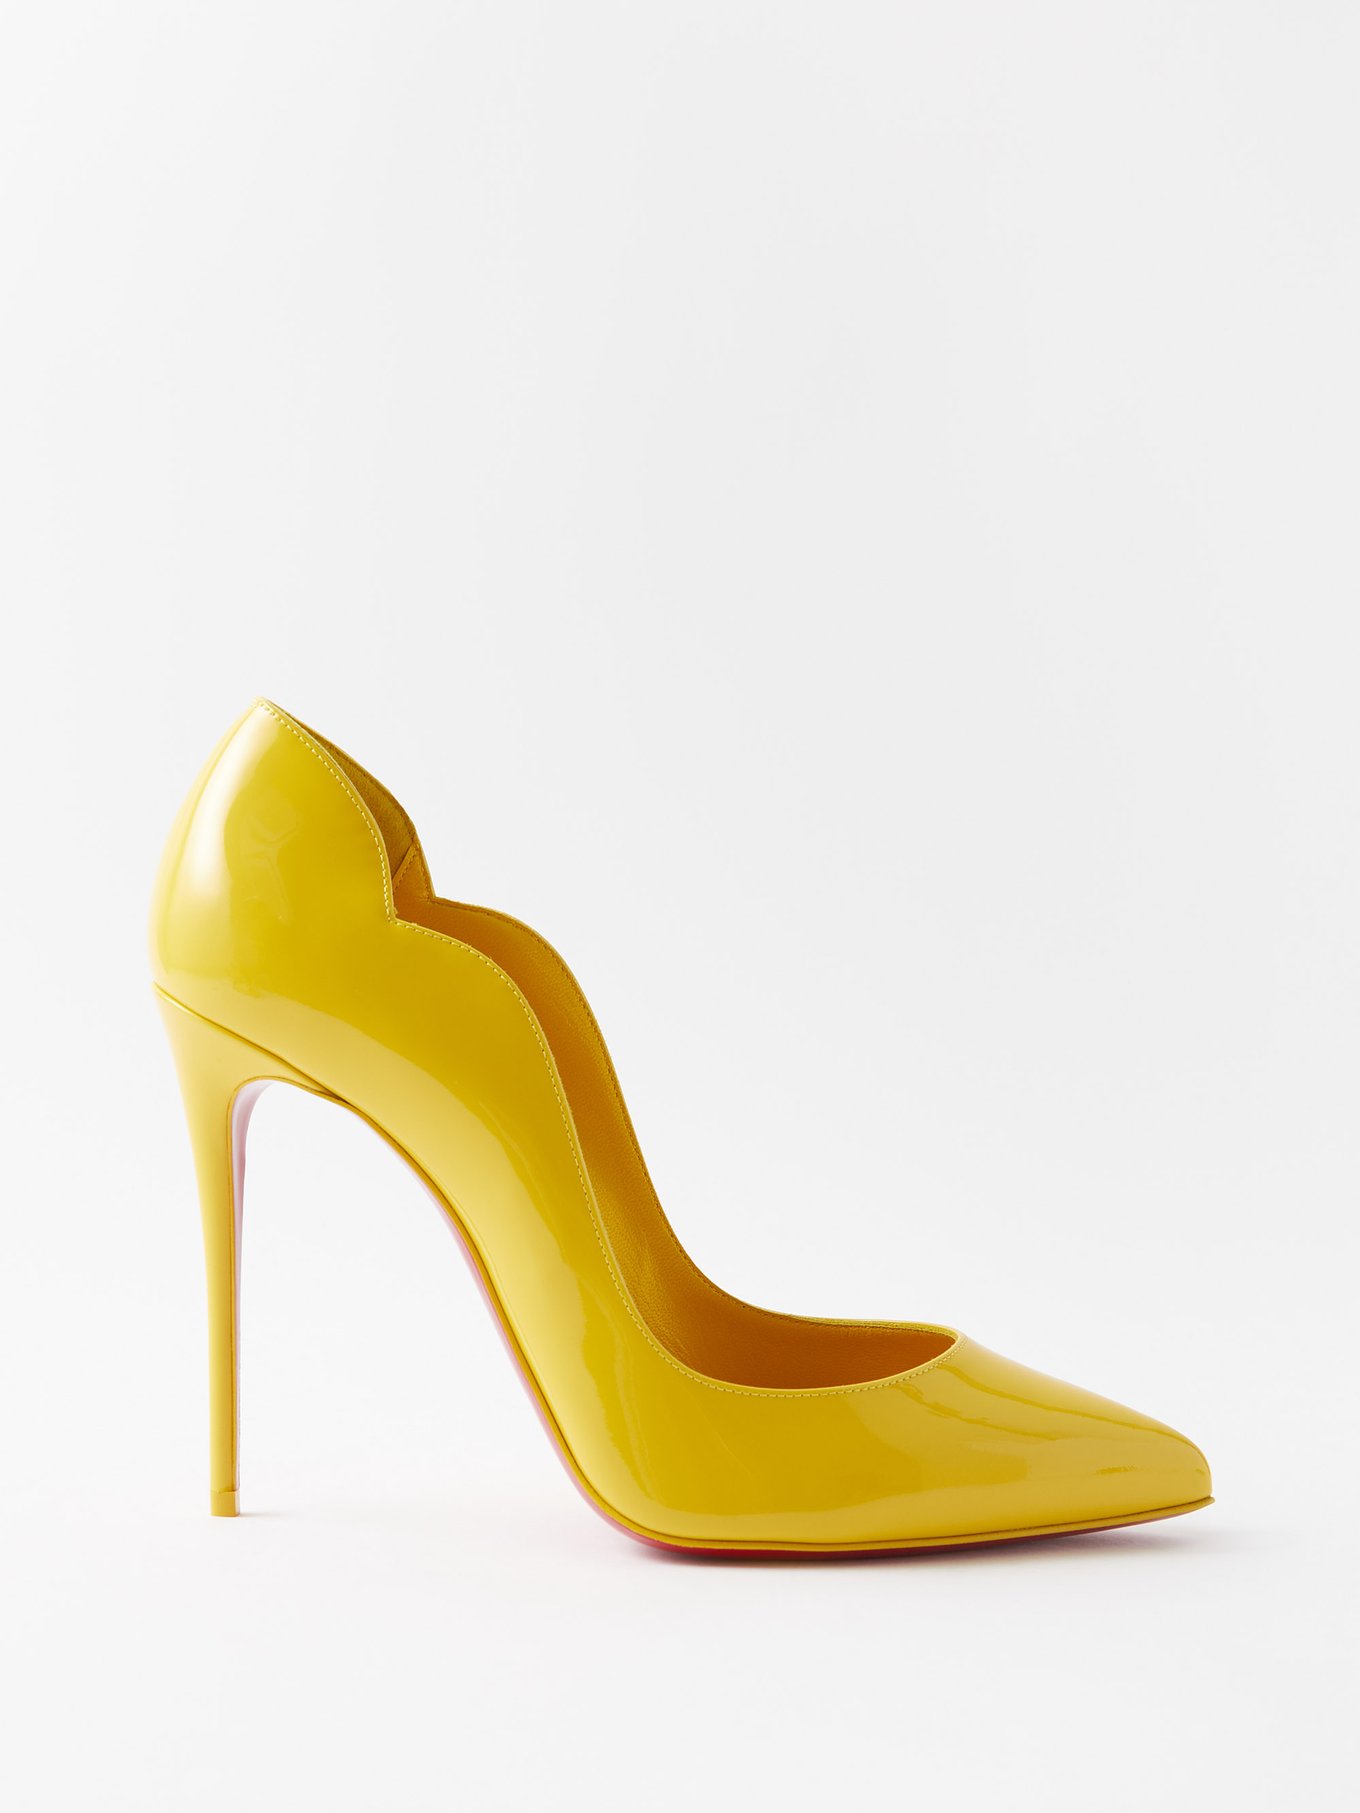 Christian Louboutin, Neon yellow pump - Unique Designer Pieces